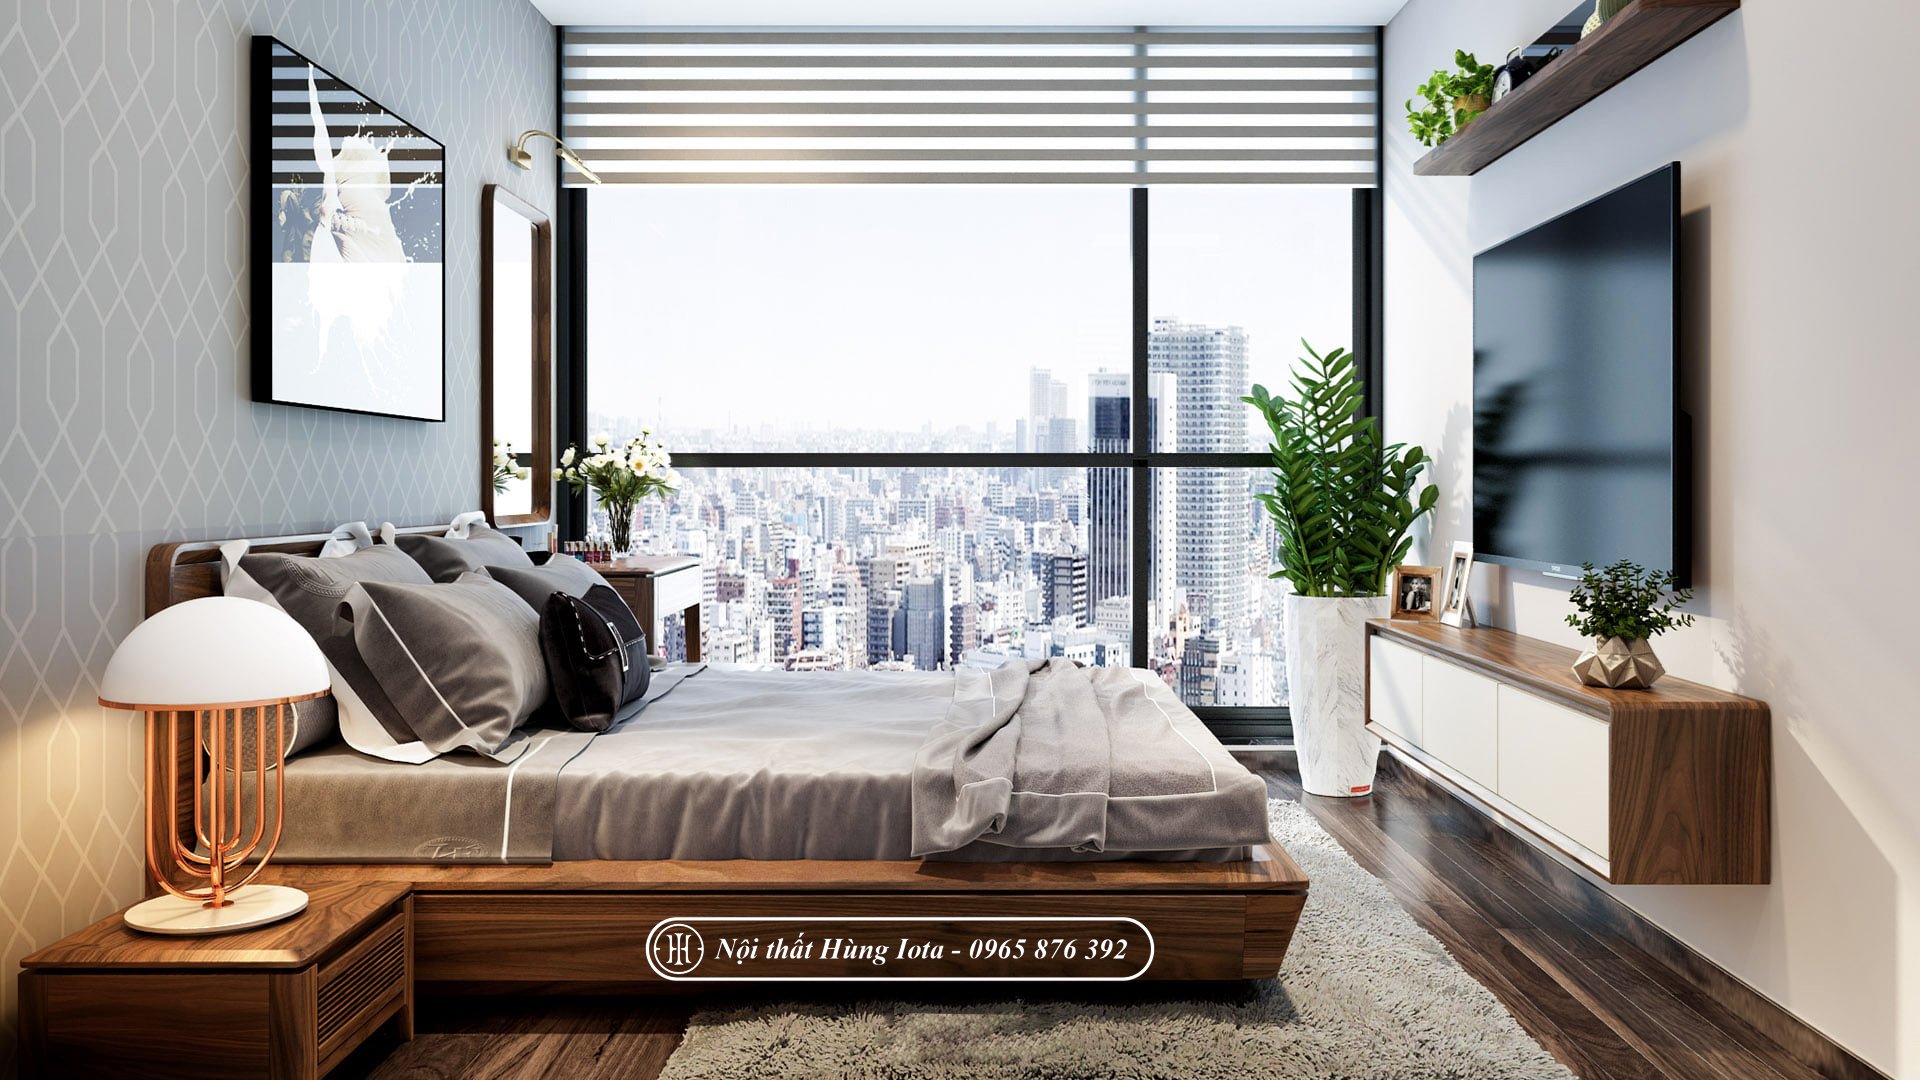 49 Mẫu thiết kế phòng ngủ chung cư đẹp theo xu hướng mới